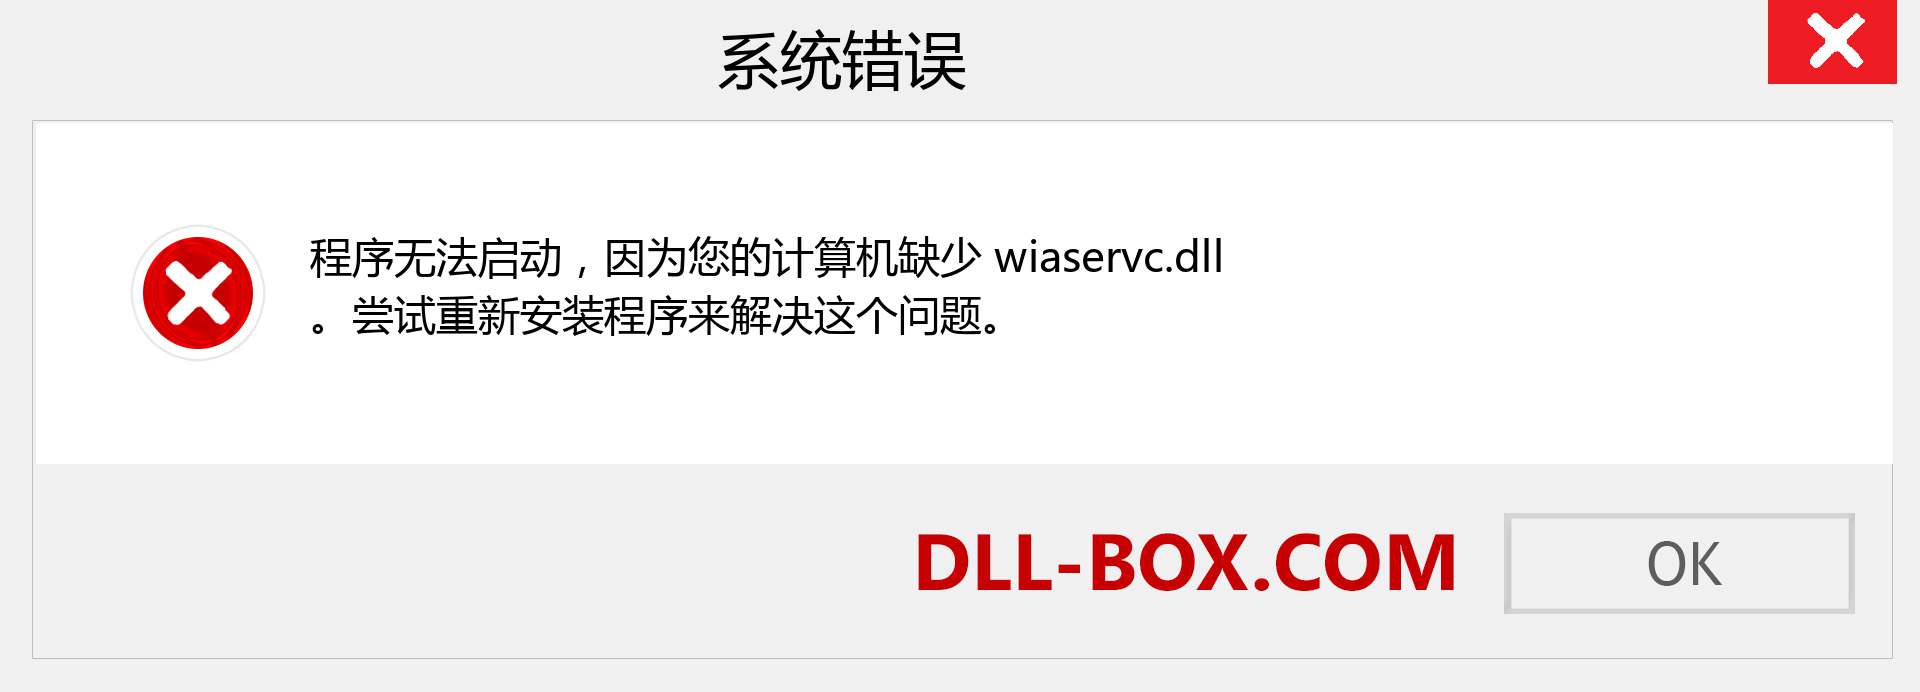 wiaservc.dll 文件丢失？。 适用于 Windows 7、8、10 的下载 - 修复 Windows、照片、图像上的 wiaservc dll 丢失错误